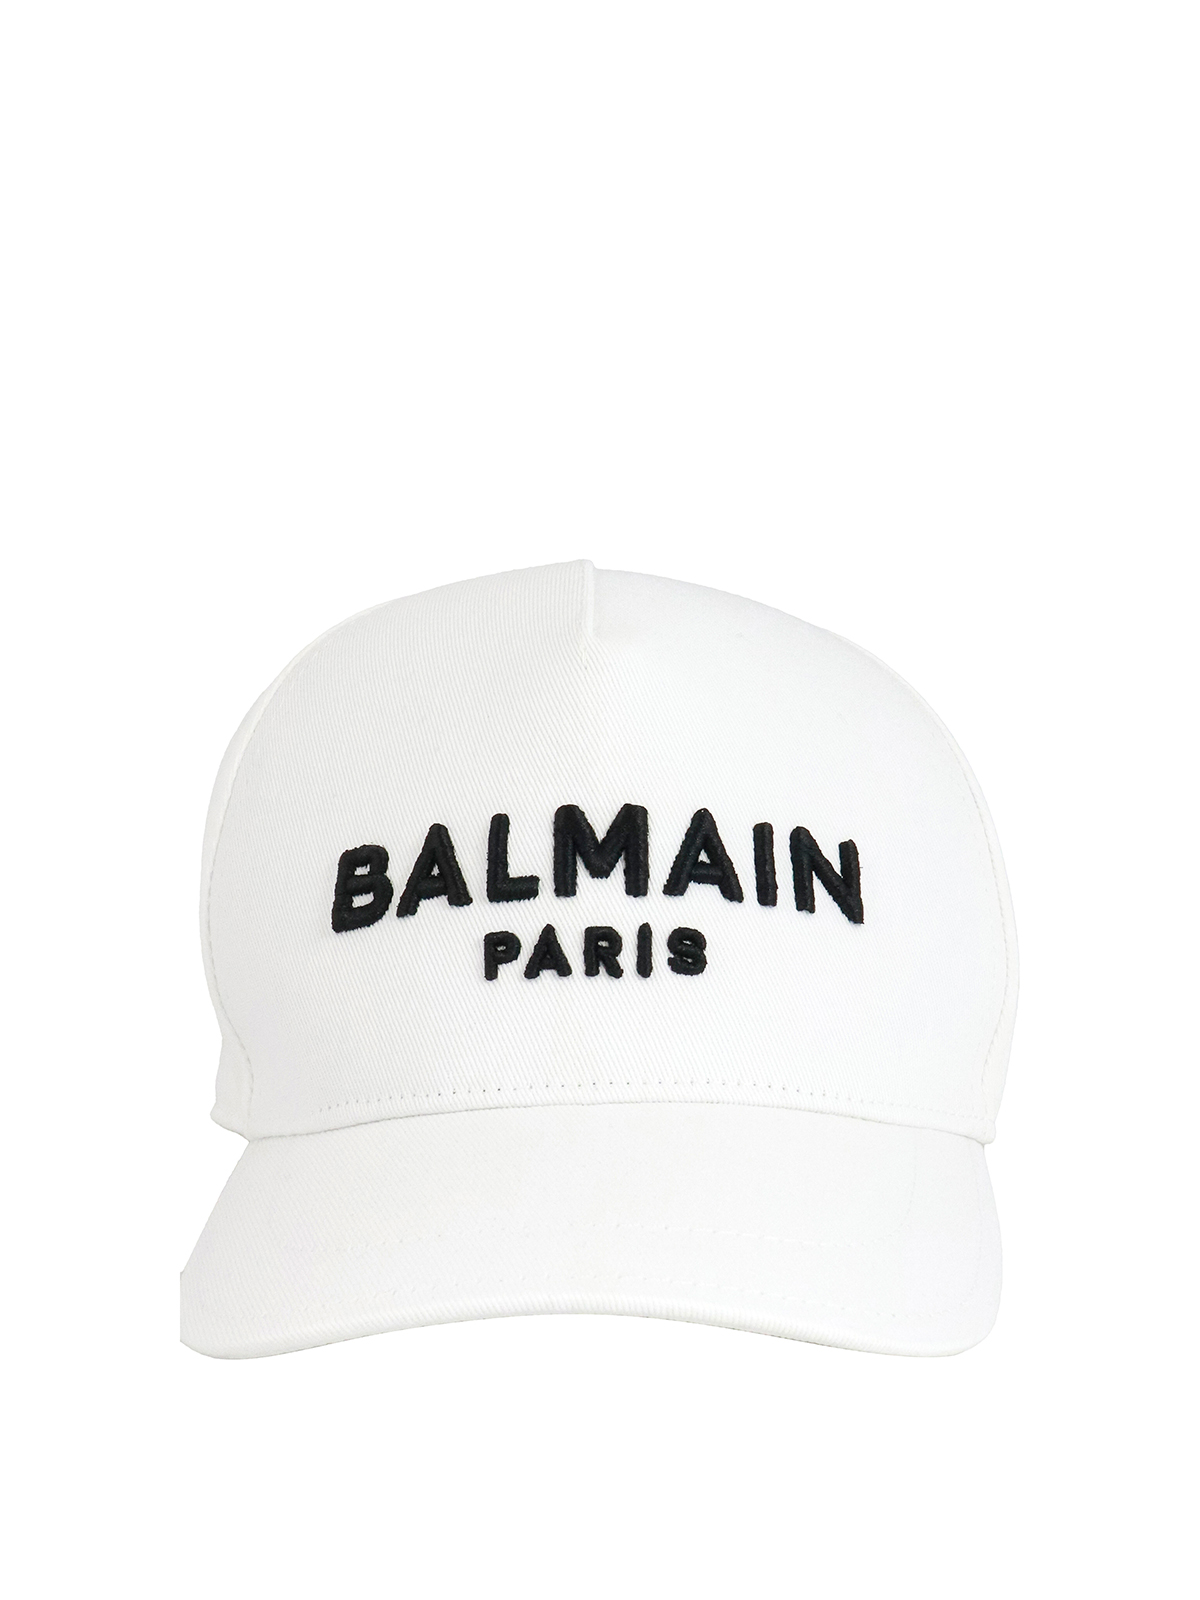 BALMAIN LOGO EMBROIDERY CAP